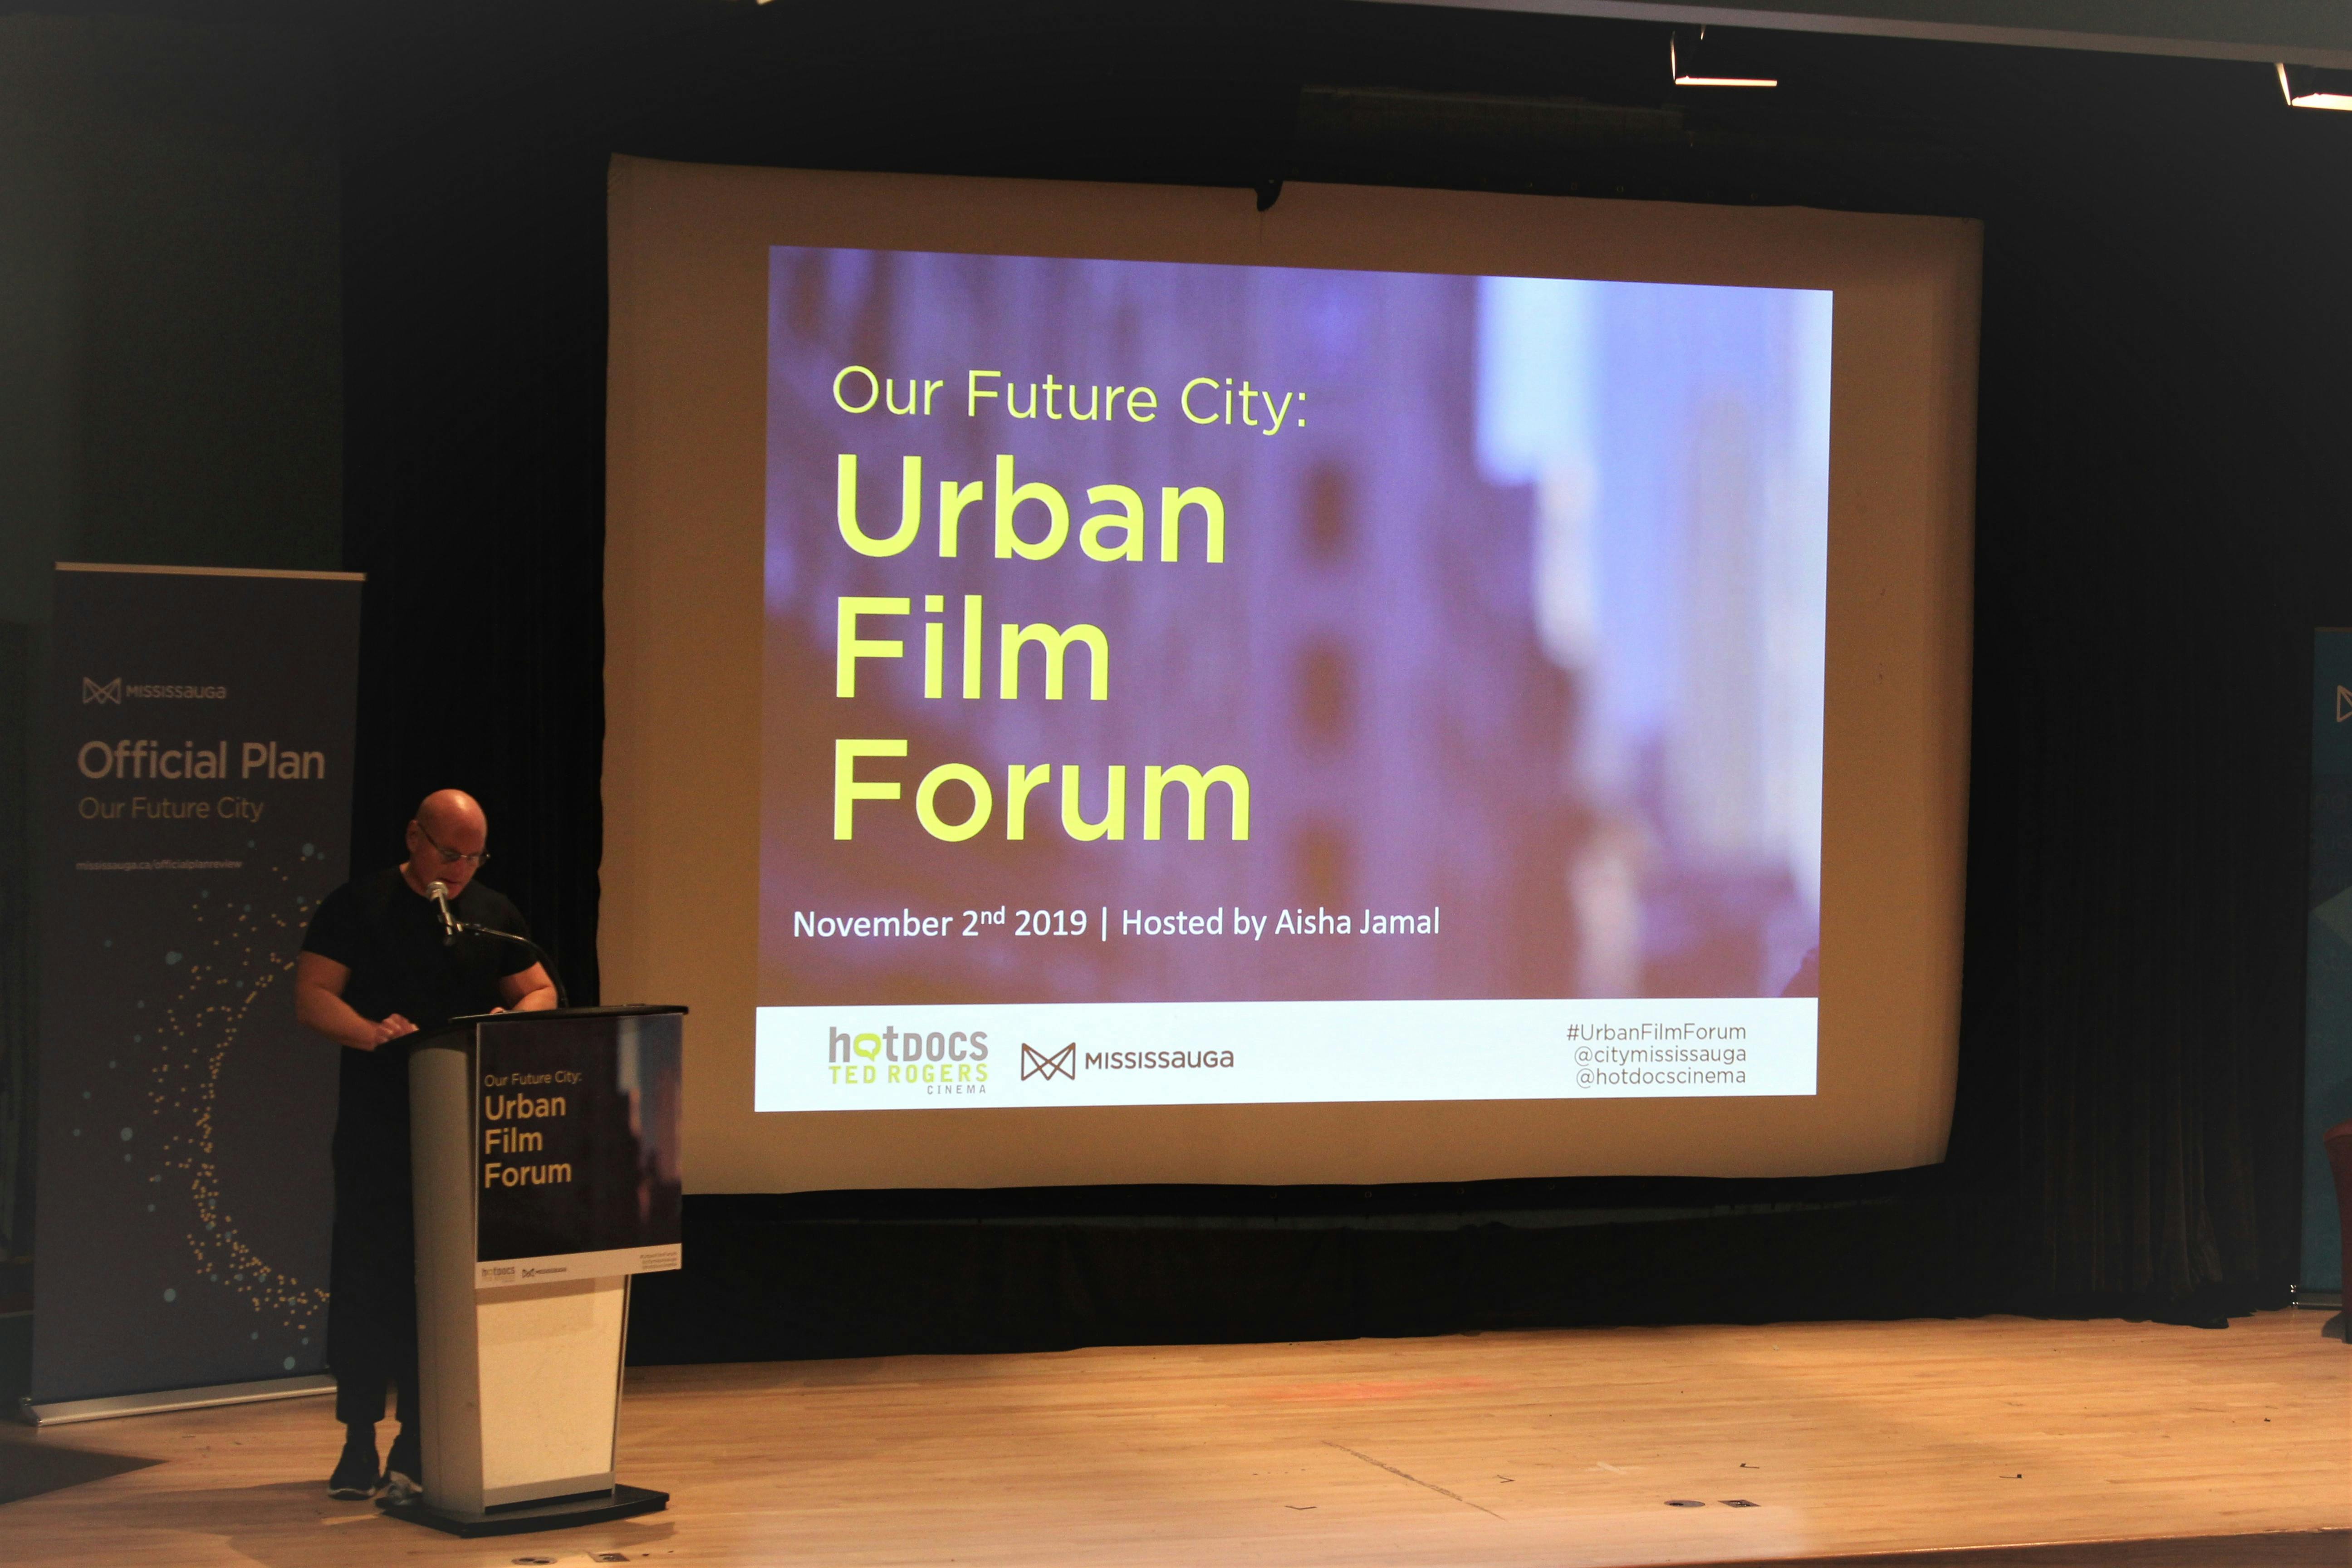 Our Future City: Urban Film Forum